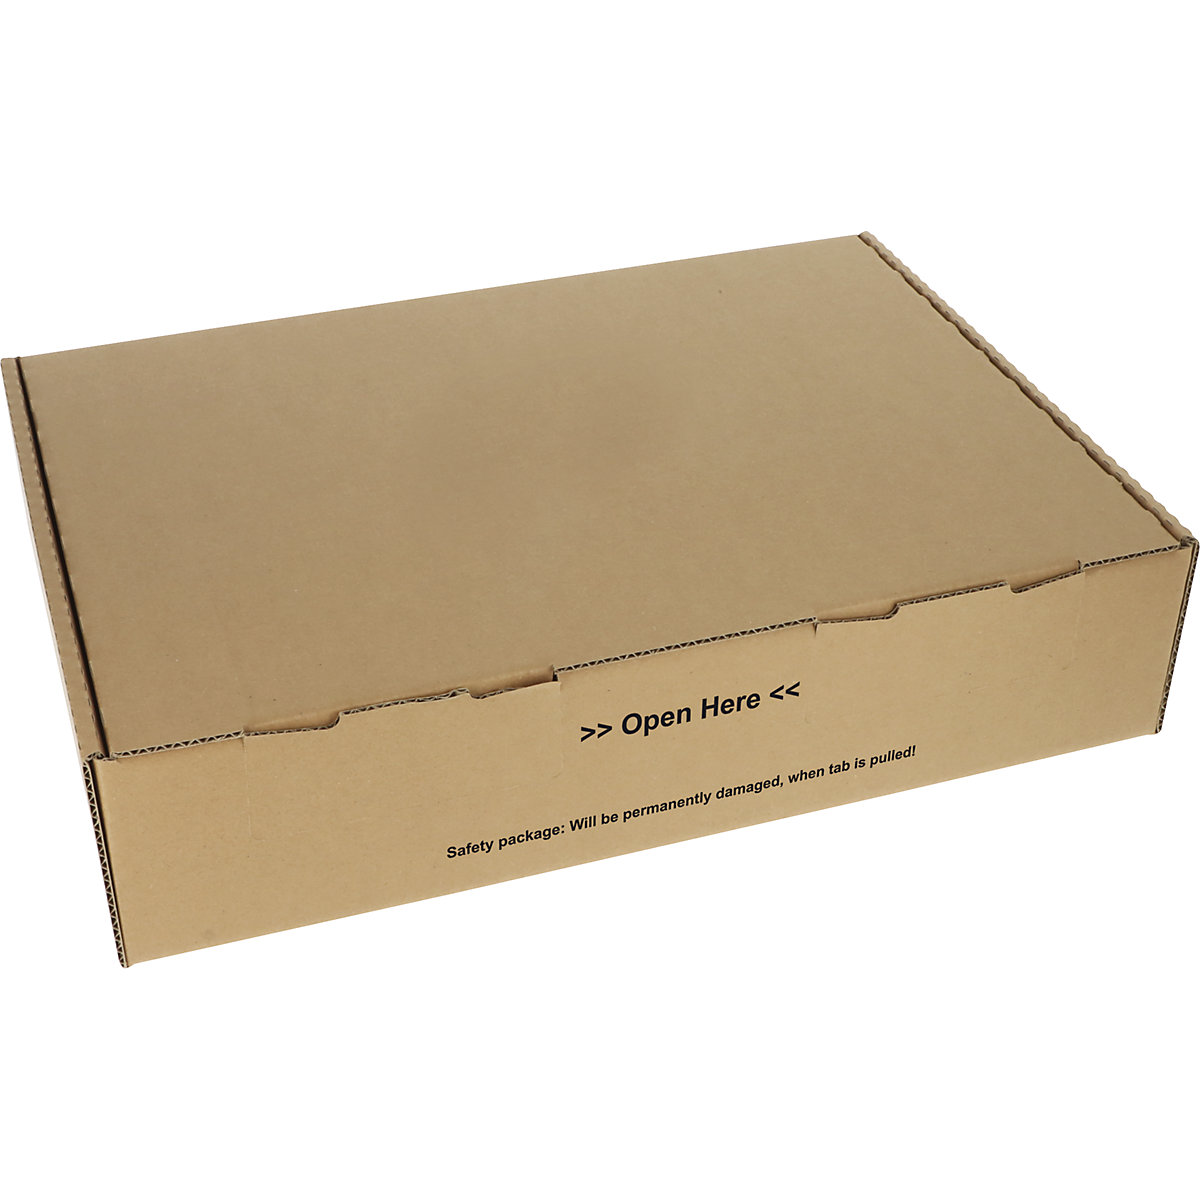 Klappbox mit Siegelverschluss, braun, VE 20 Stk, Innen-LxBxH 430 x 310 x 100 mm